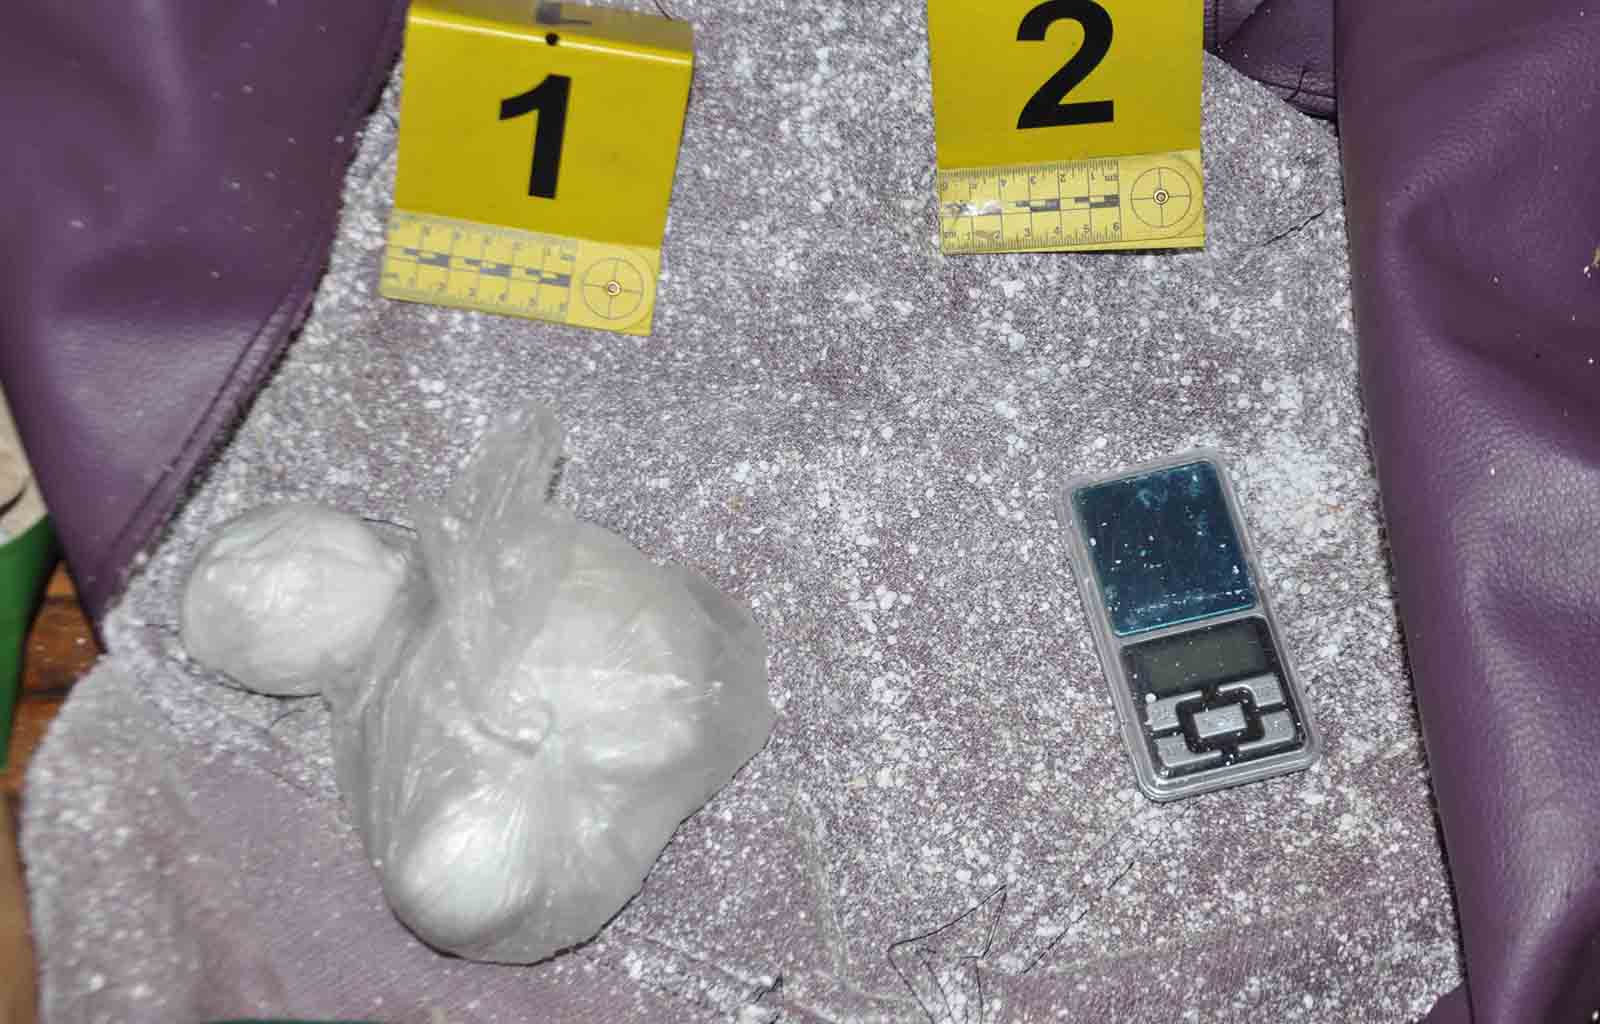 Policija zaplenila oko 1,8 kilograma marihuane, više od 1,5 kilograma amfetamina i uhapsila pet osoba